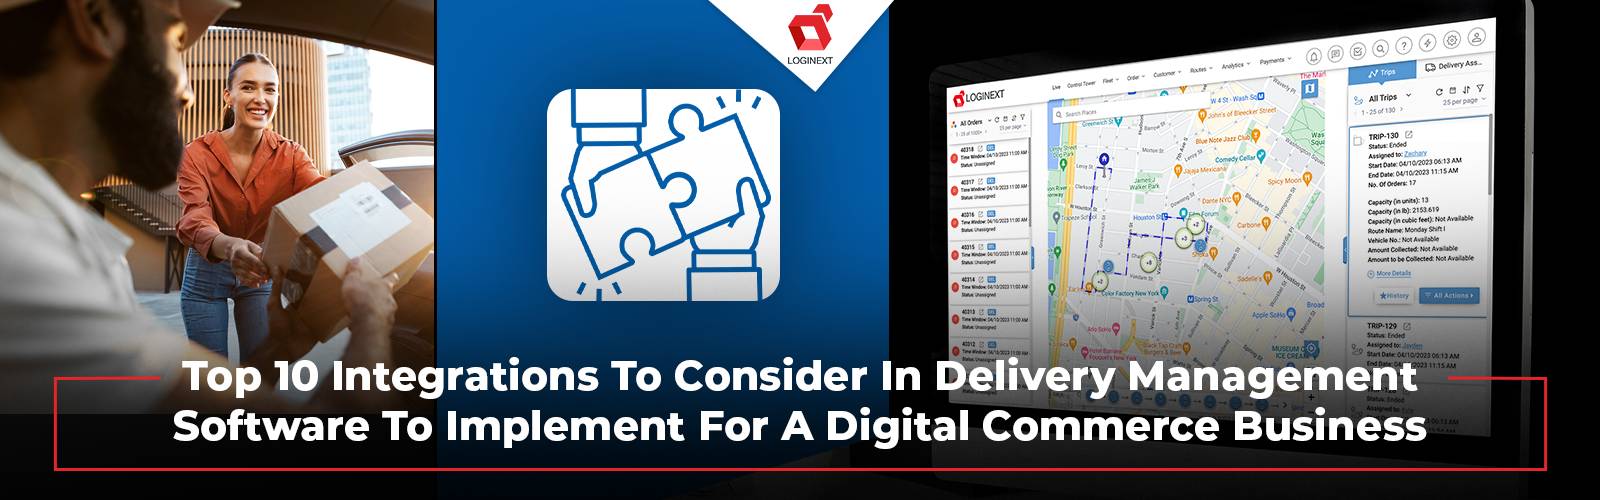 Las 10 principales integraciones en software de gestión de entregas para comercio digital